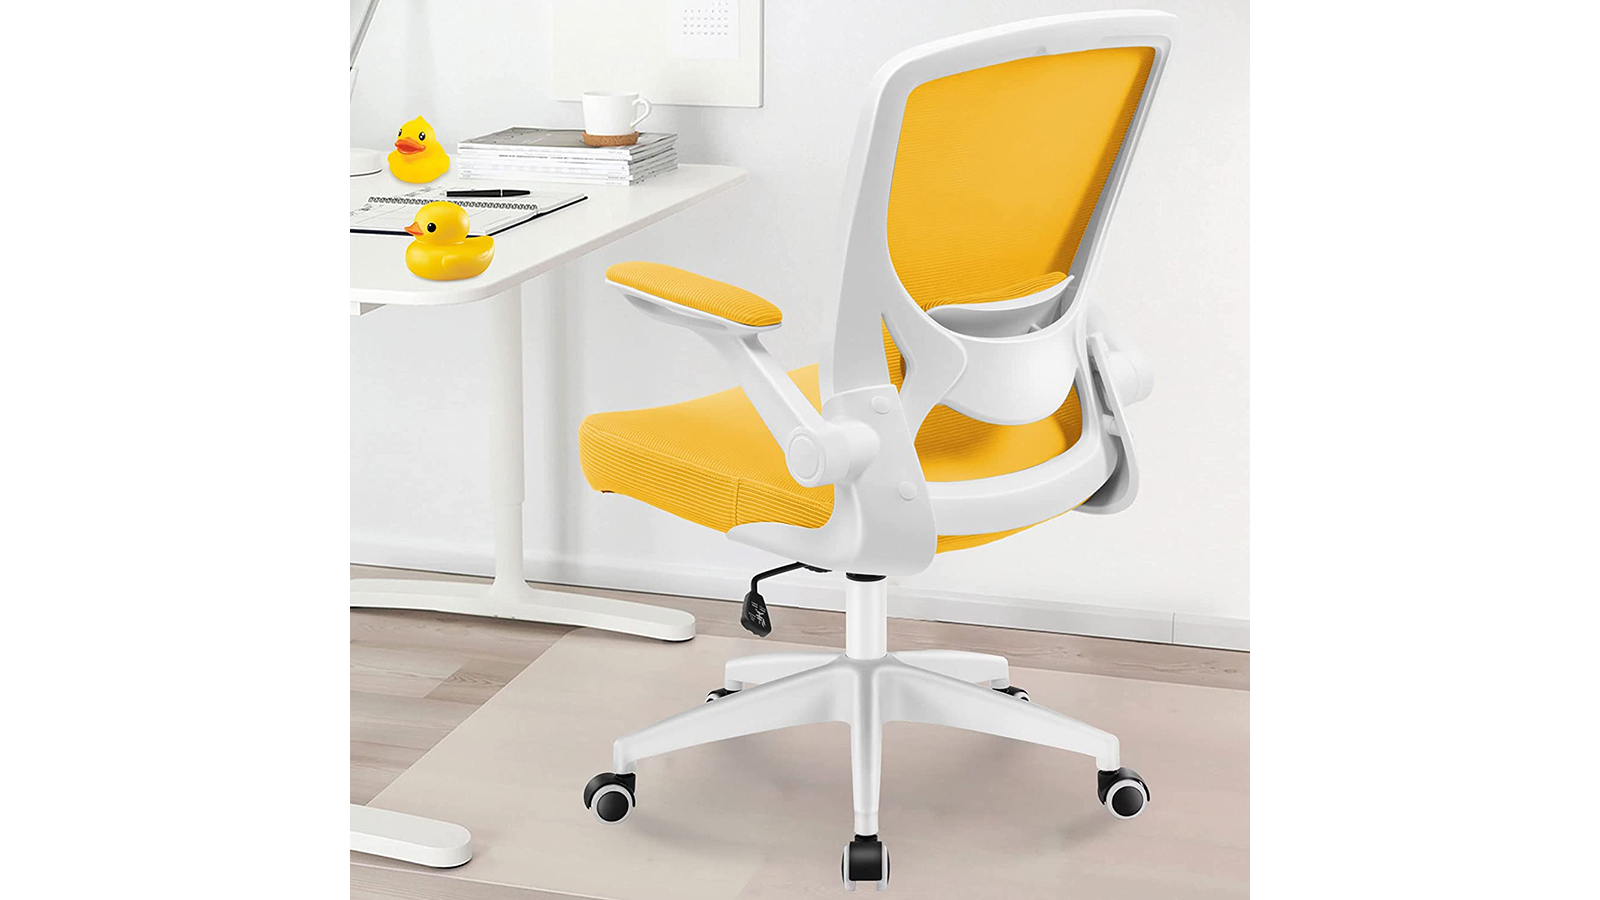 KERDOM Office Chair: Adjustable Armrests